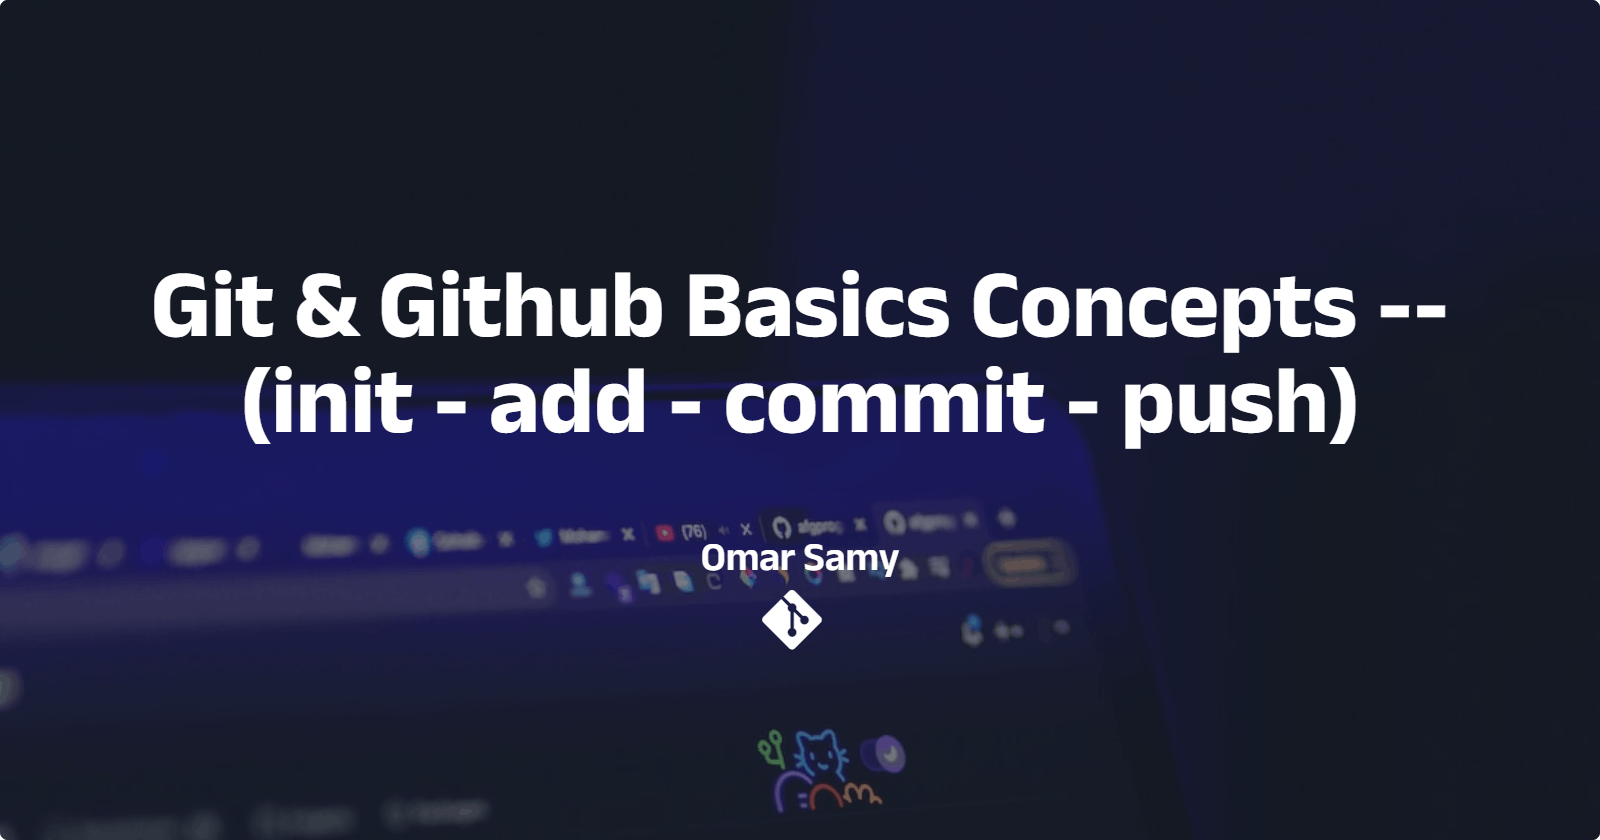 Git & Github
Basics Concepts -- (init - add - commit - push)